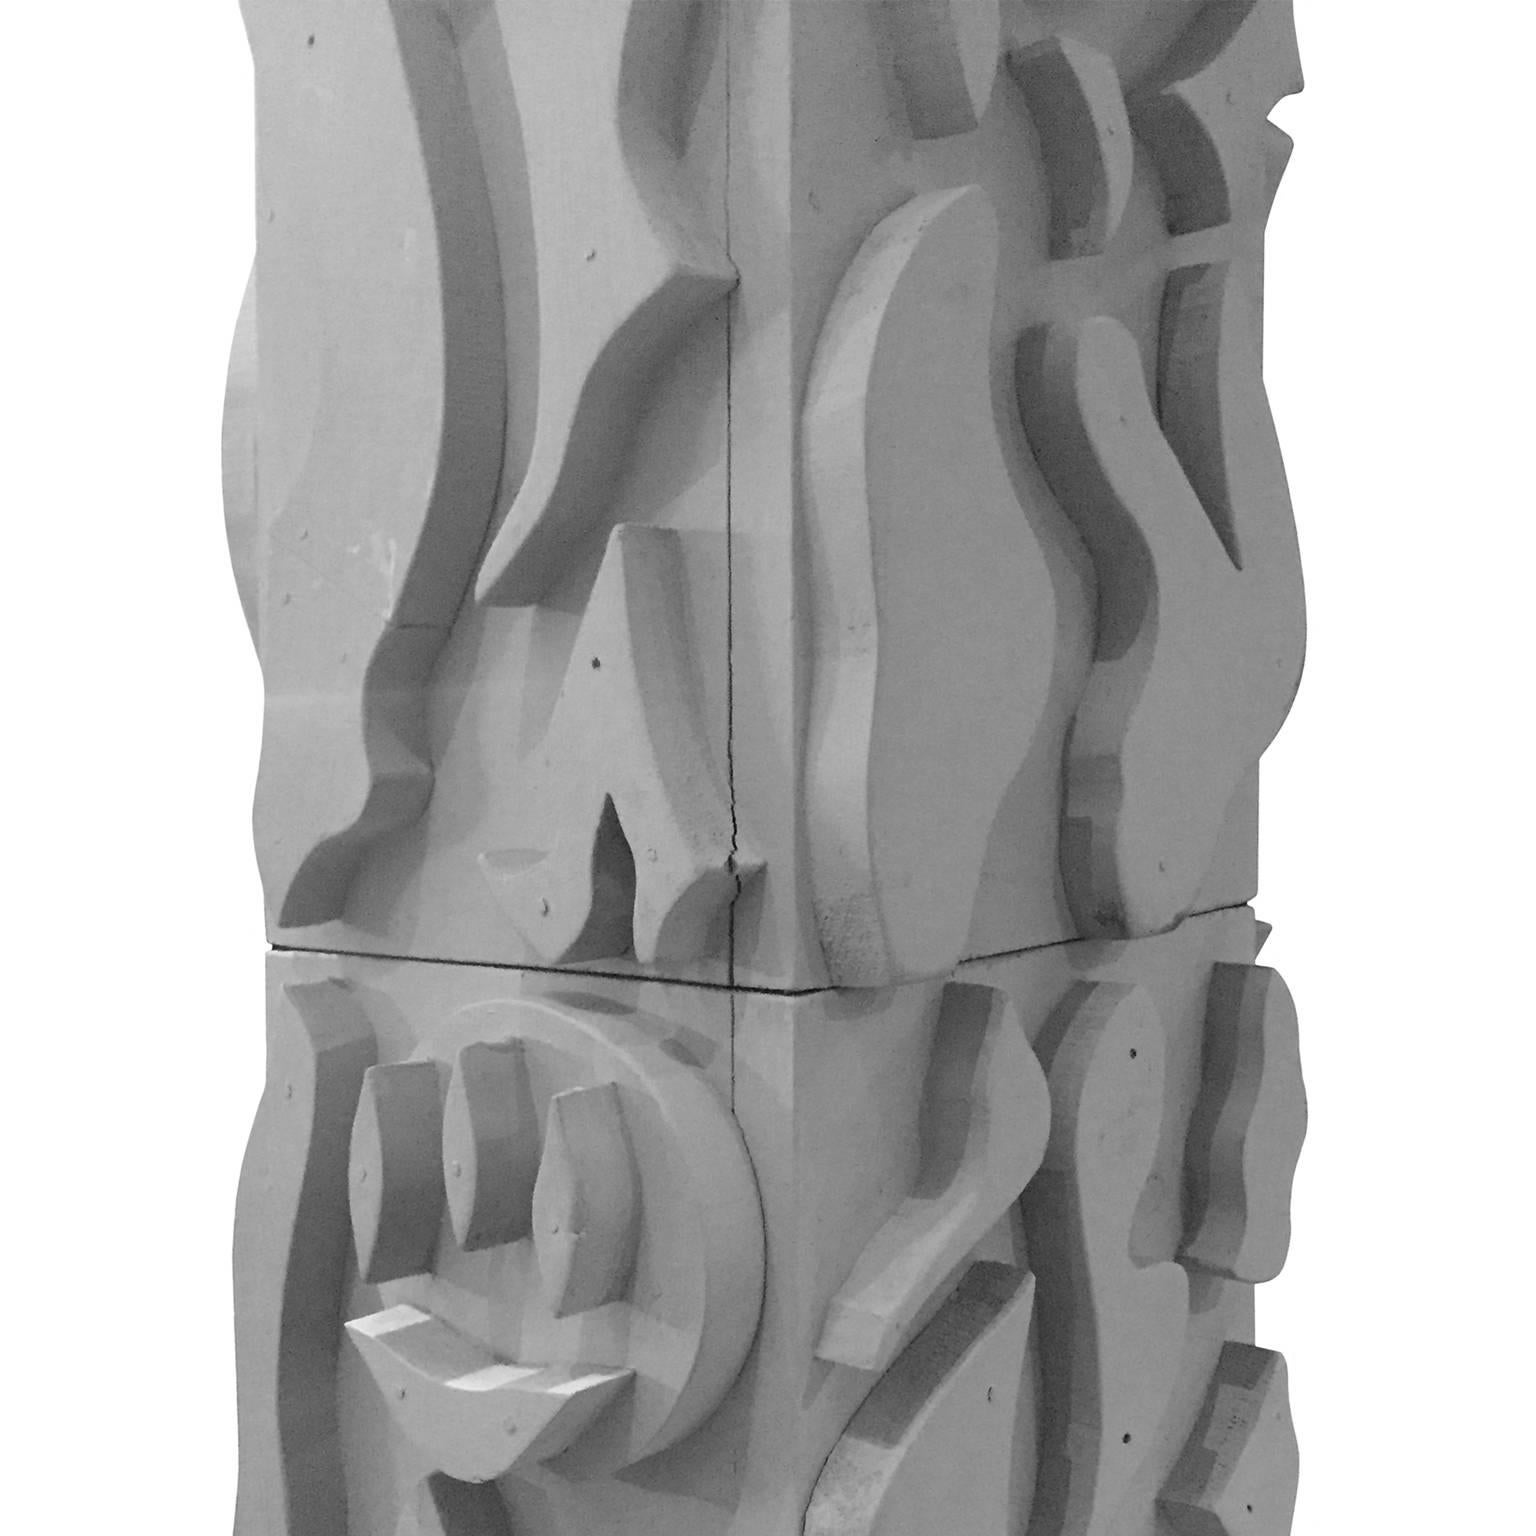 Matte grey wood totem sculpture, entitled 